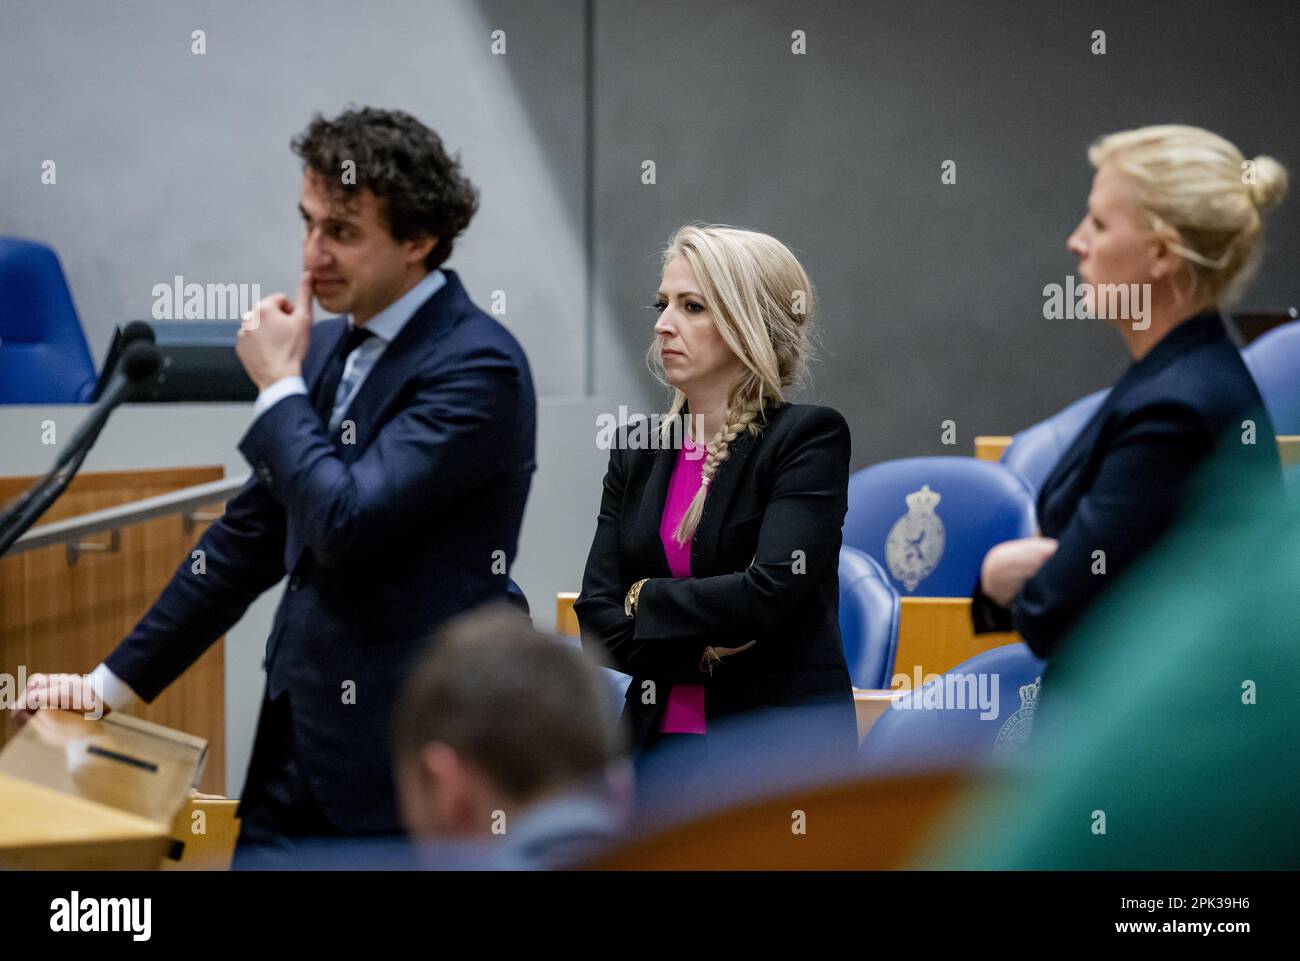 LA HAYE - Jesse Klaver (GroenLinks), Lilian Marijnissen (SP) et Attje Kuiken (D66) lors du débat à la Chambre des représentants sur les résultats des élections au Conseil provincial. ANP SEM VAN DER WAL pays-bas sortie - belgique sortie Banque D'Images